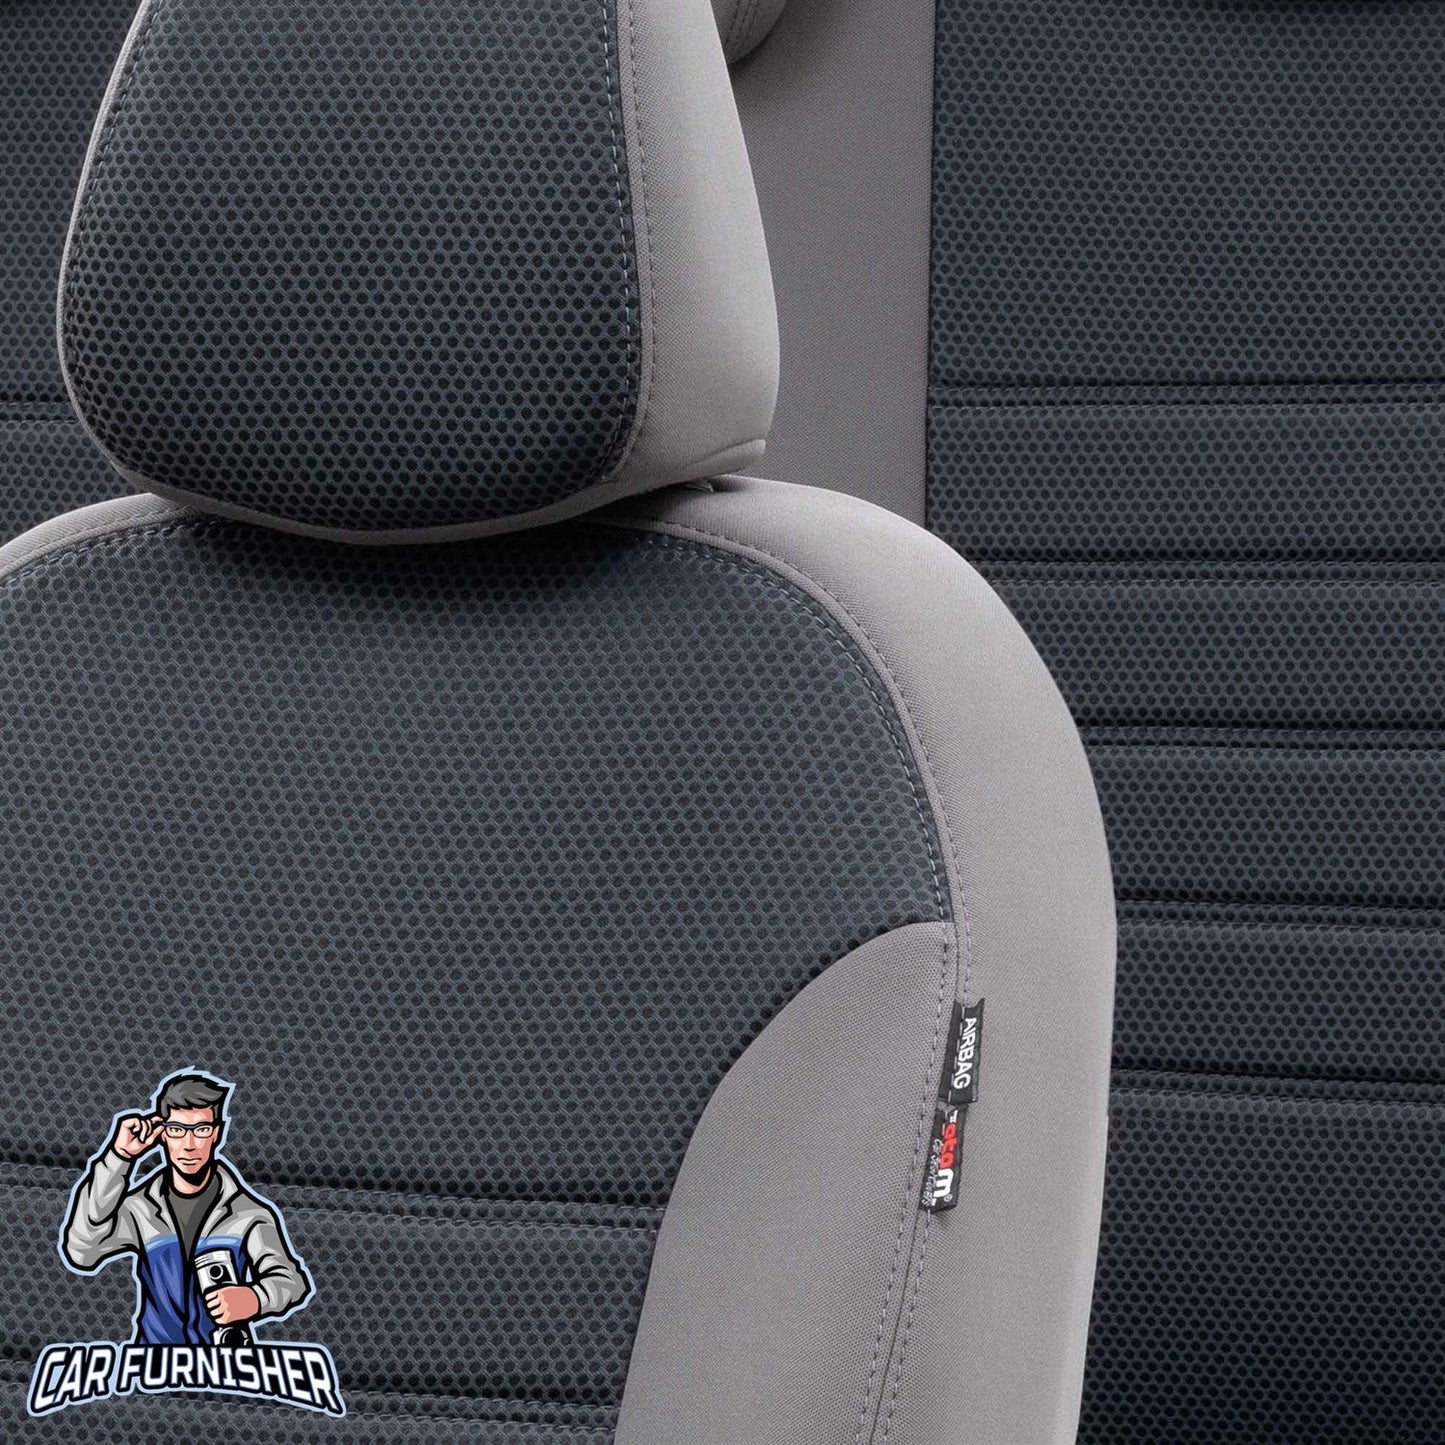 Kia Cerato Seat Covers Original Jacquard Design Smoked Jacquard Fabric